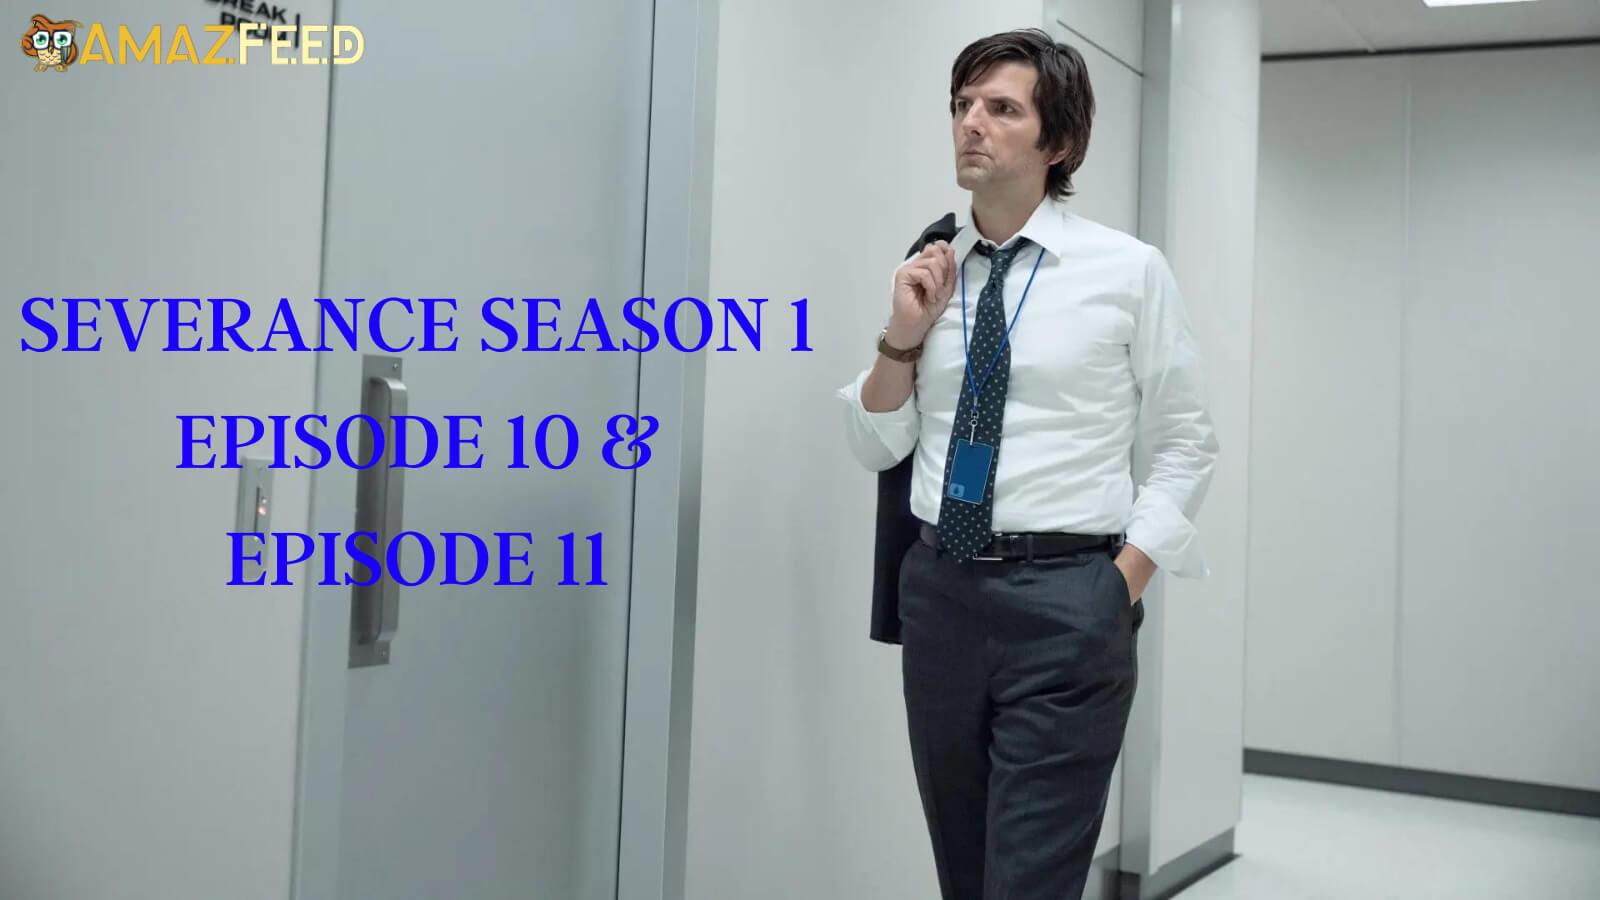 Severance season 1 Episode 10